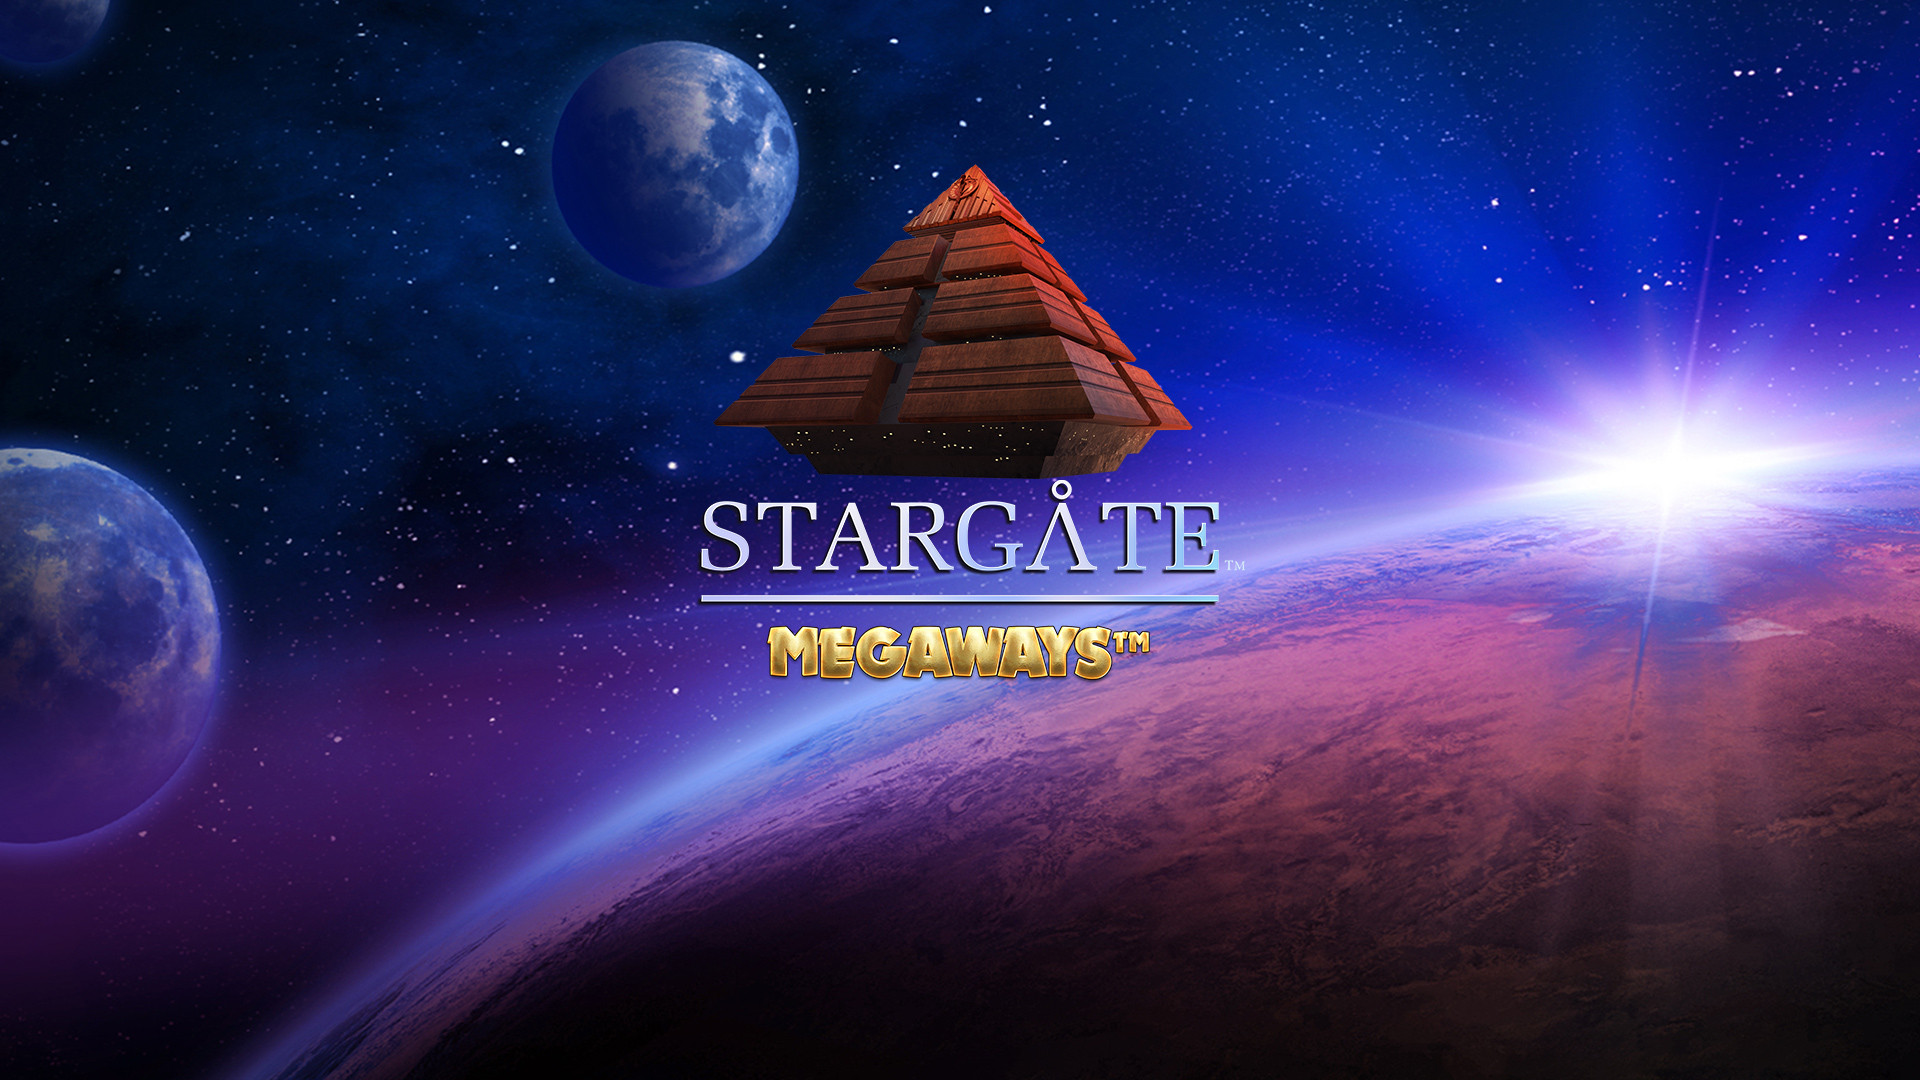 Stargate MEGAWAYS